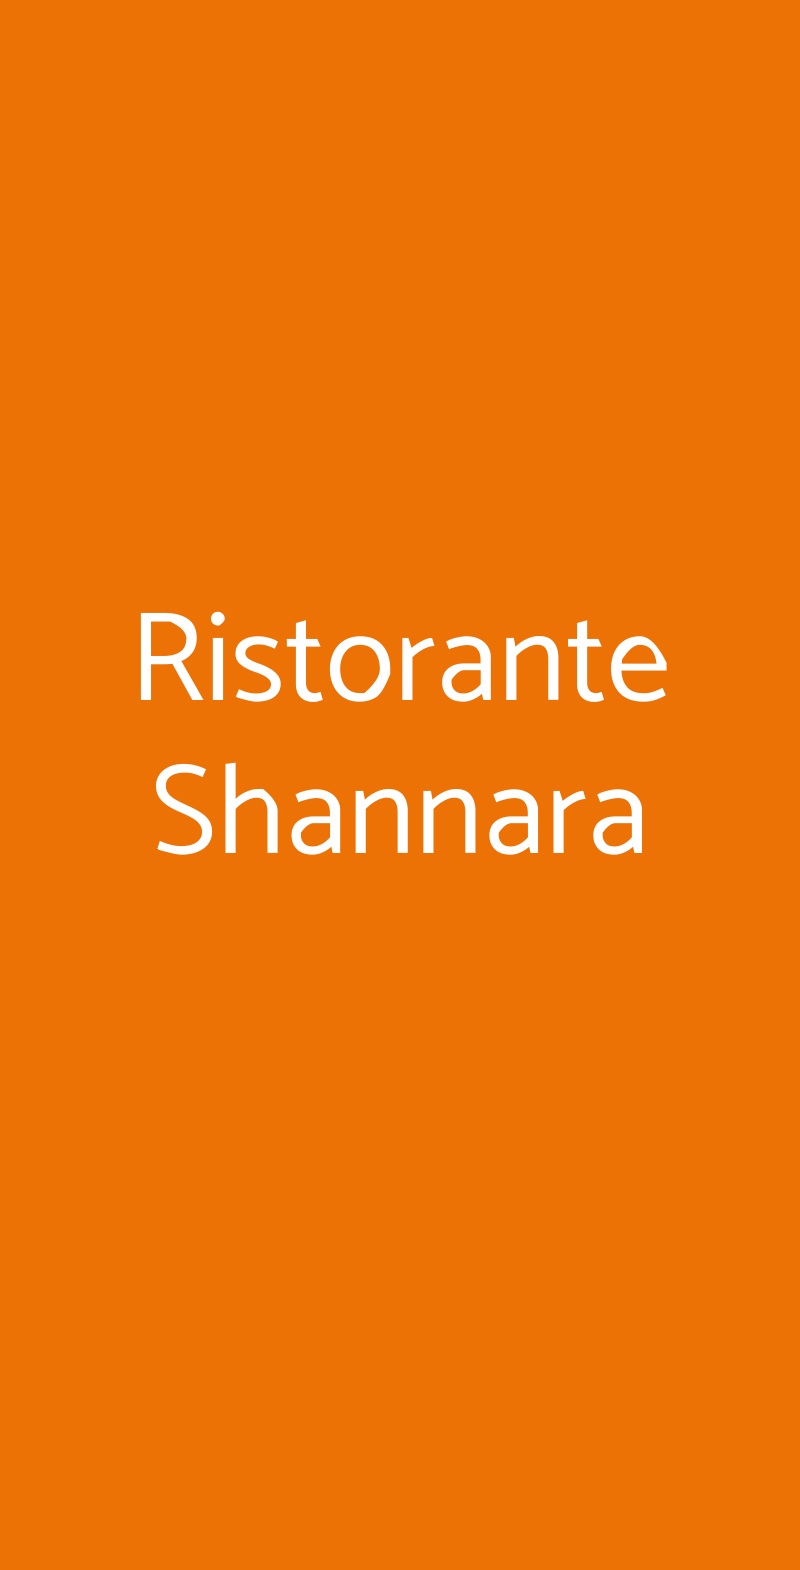 Ristorante Shannara Milano menù 1 pagina